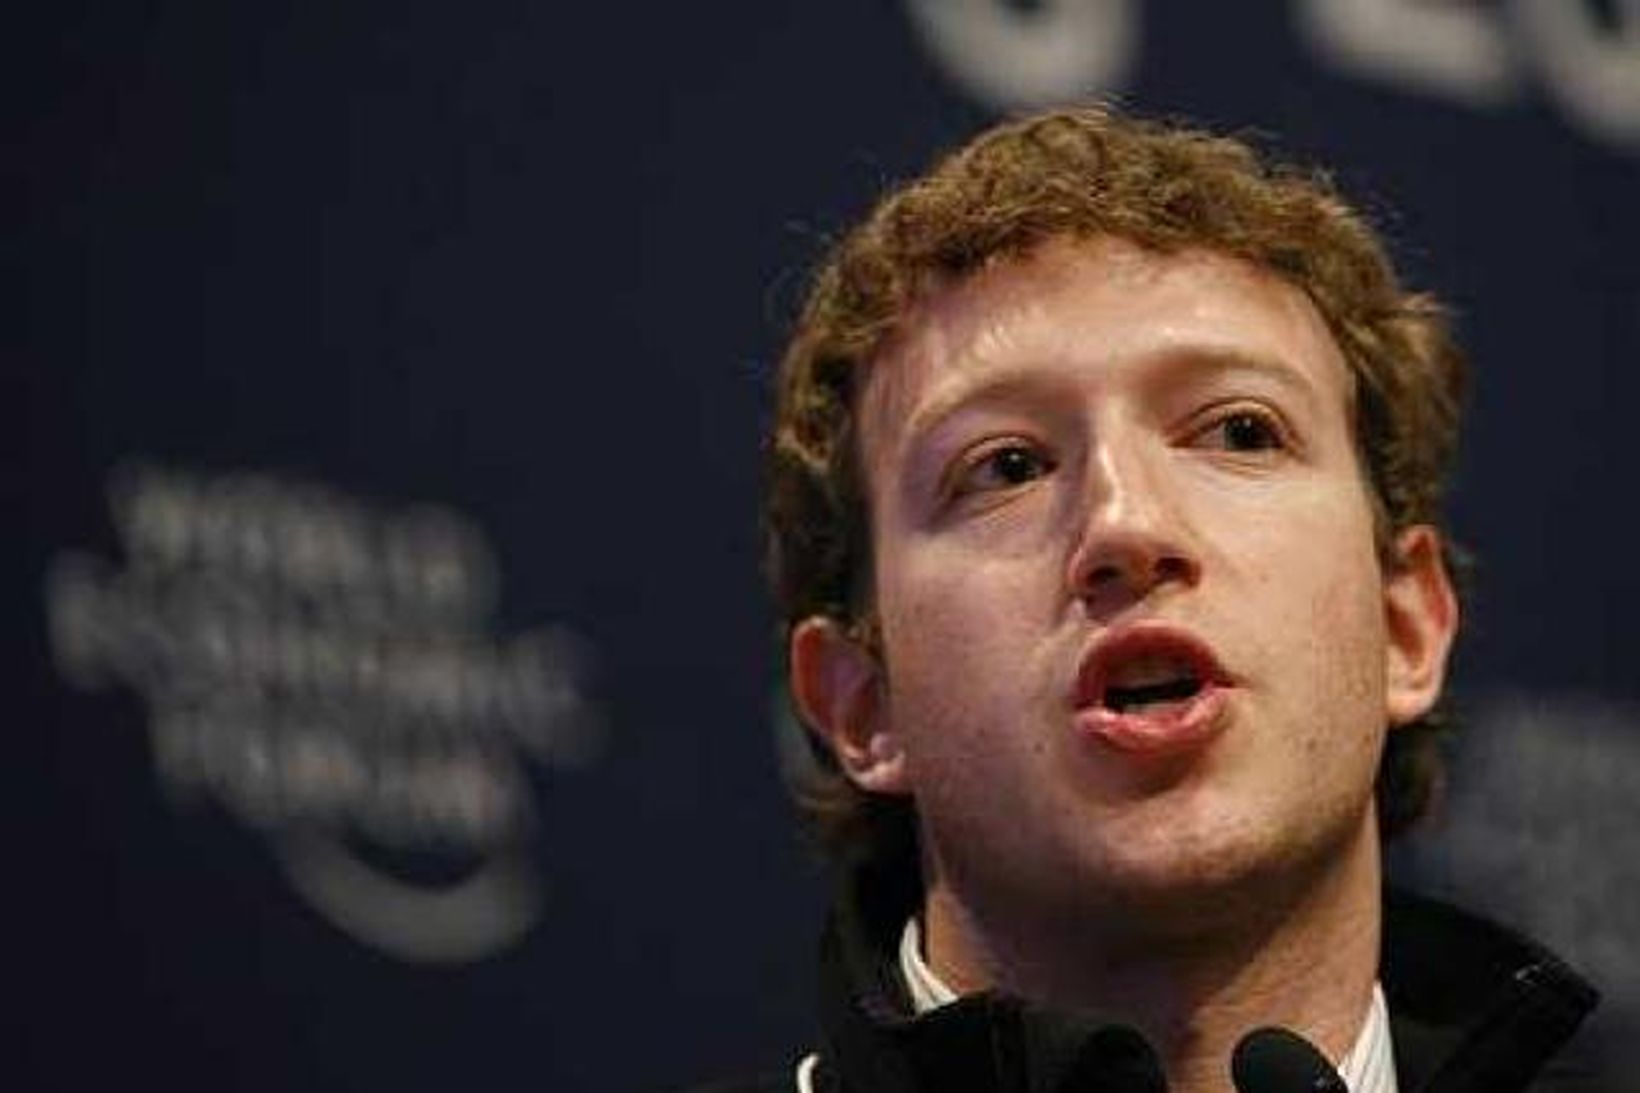 Zuckerberg kynnir markaðsmöguleika Facebook í markaðsrannsóknum í Davos.